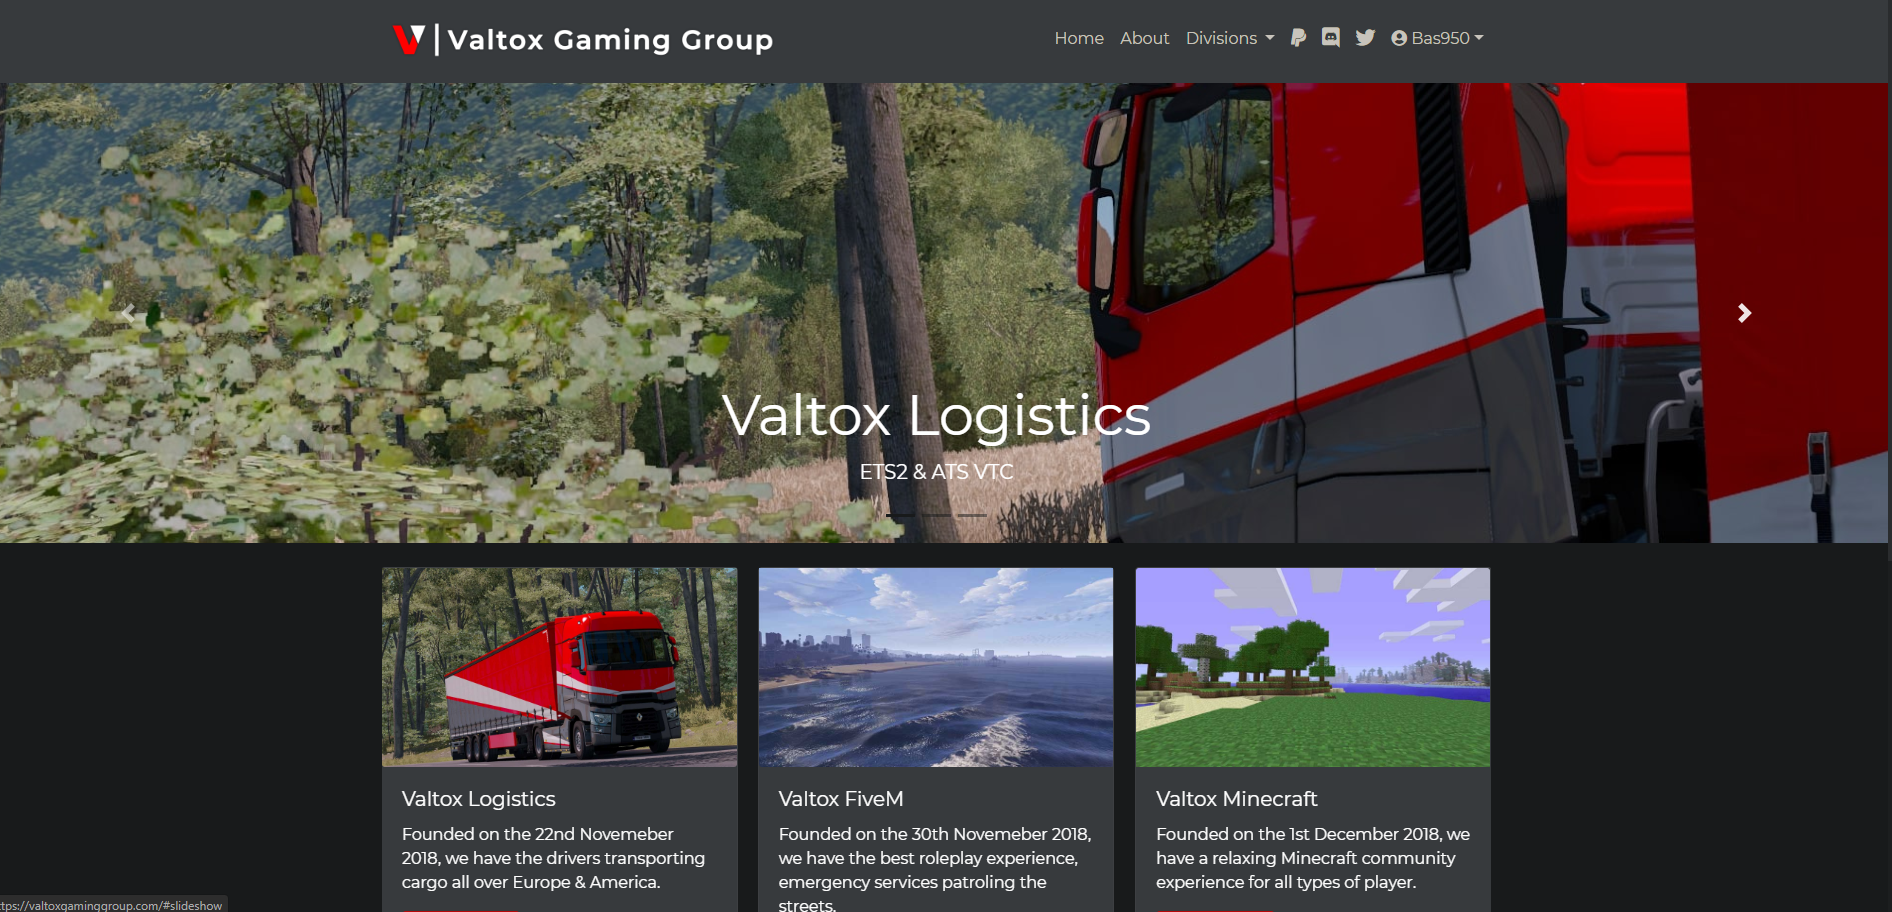 Valtox Gaming Group